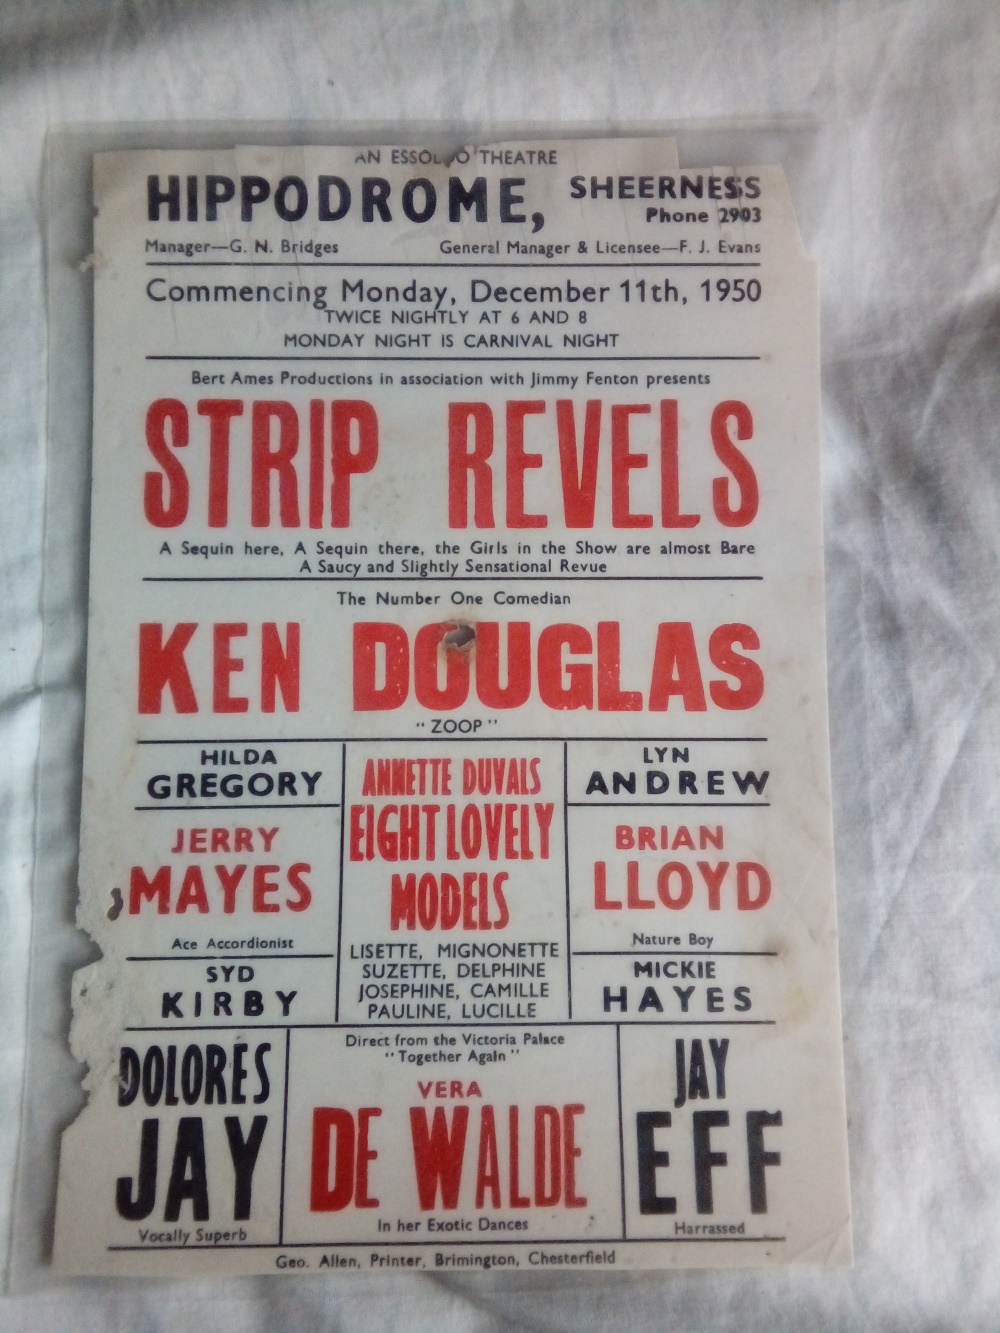 1950 Sheerness Hippodrome “Strip Revels” original hand bill or flyer